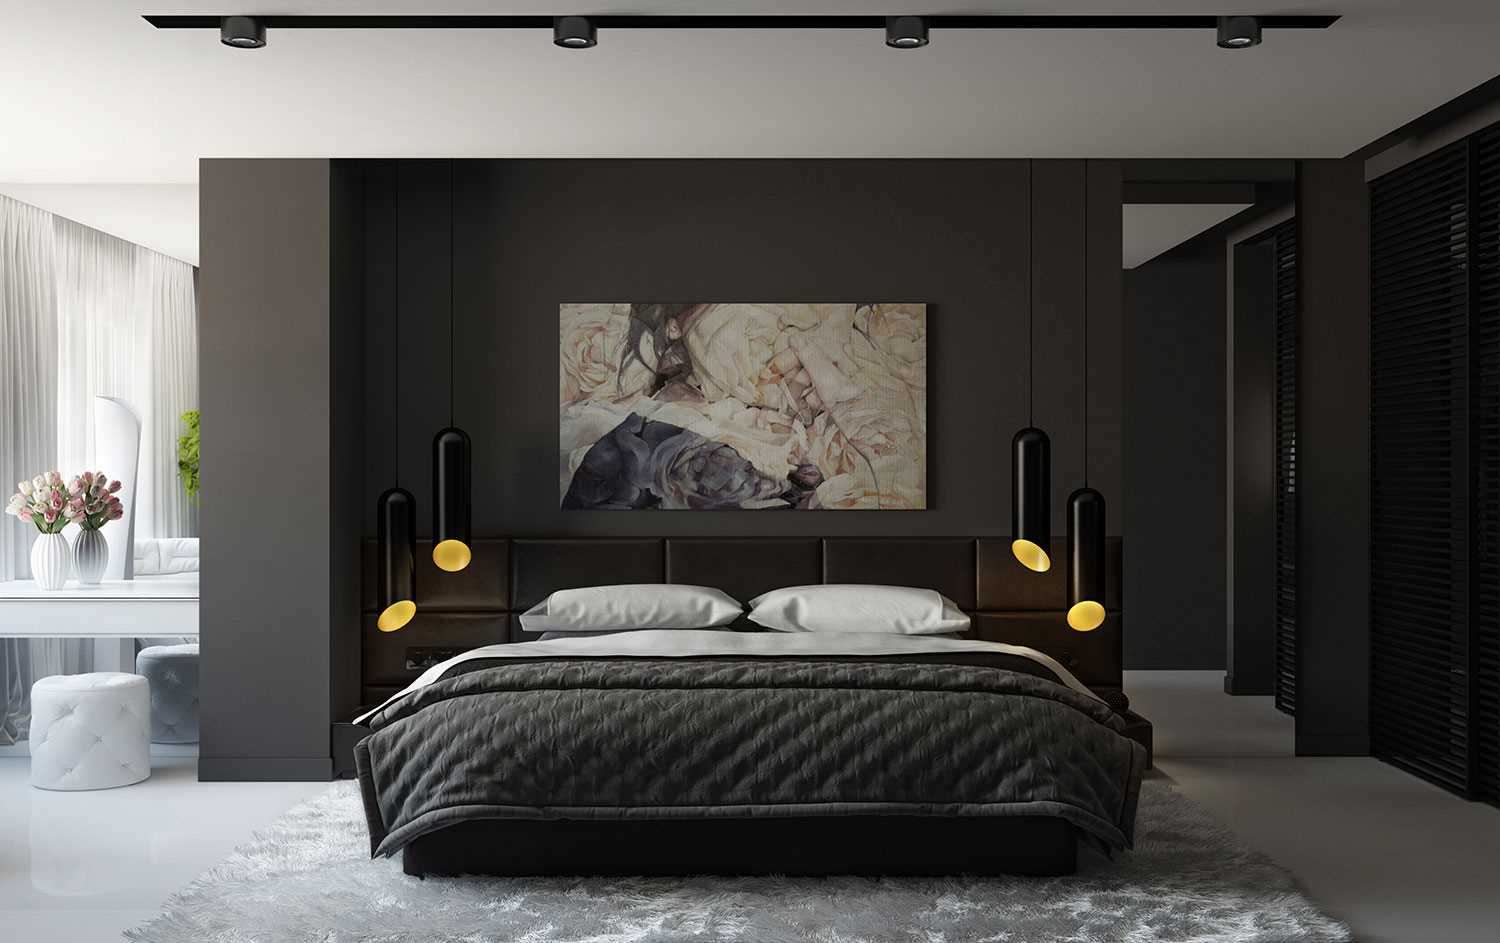 Thiết kế phòng ngủ với chiếu cao giường phù hợp đem lại sự thoải mái cho gia chủ